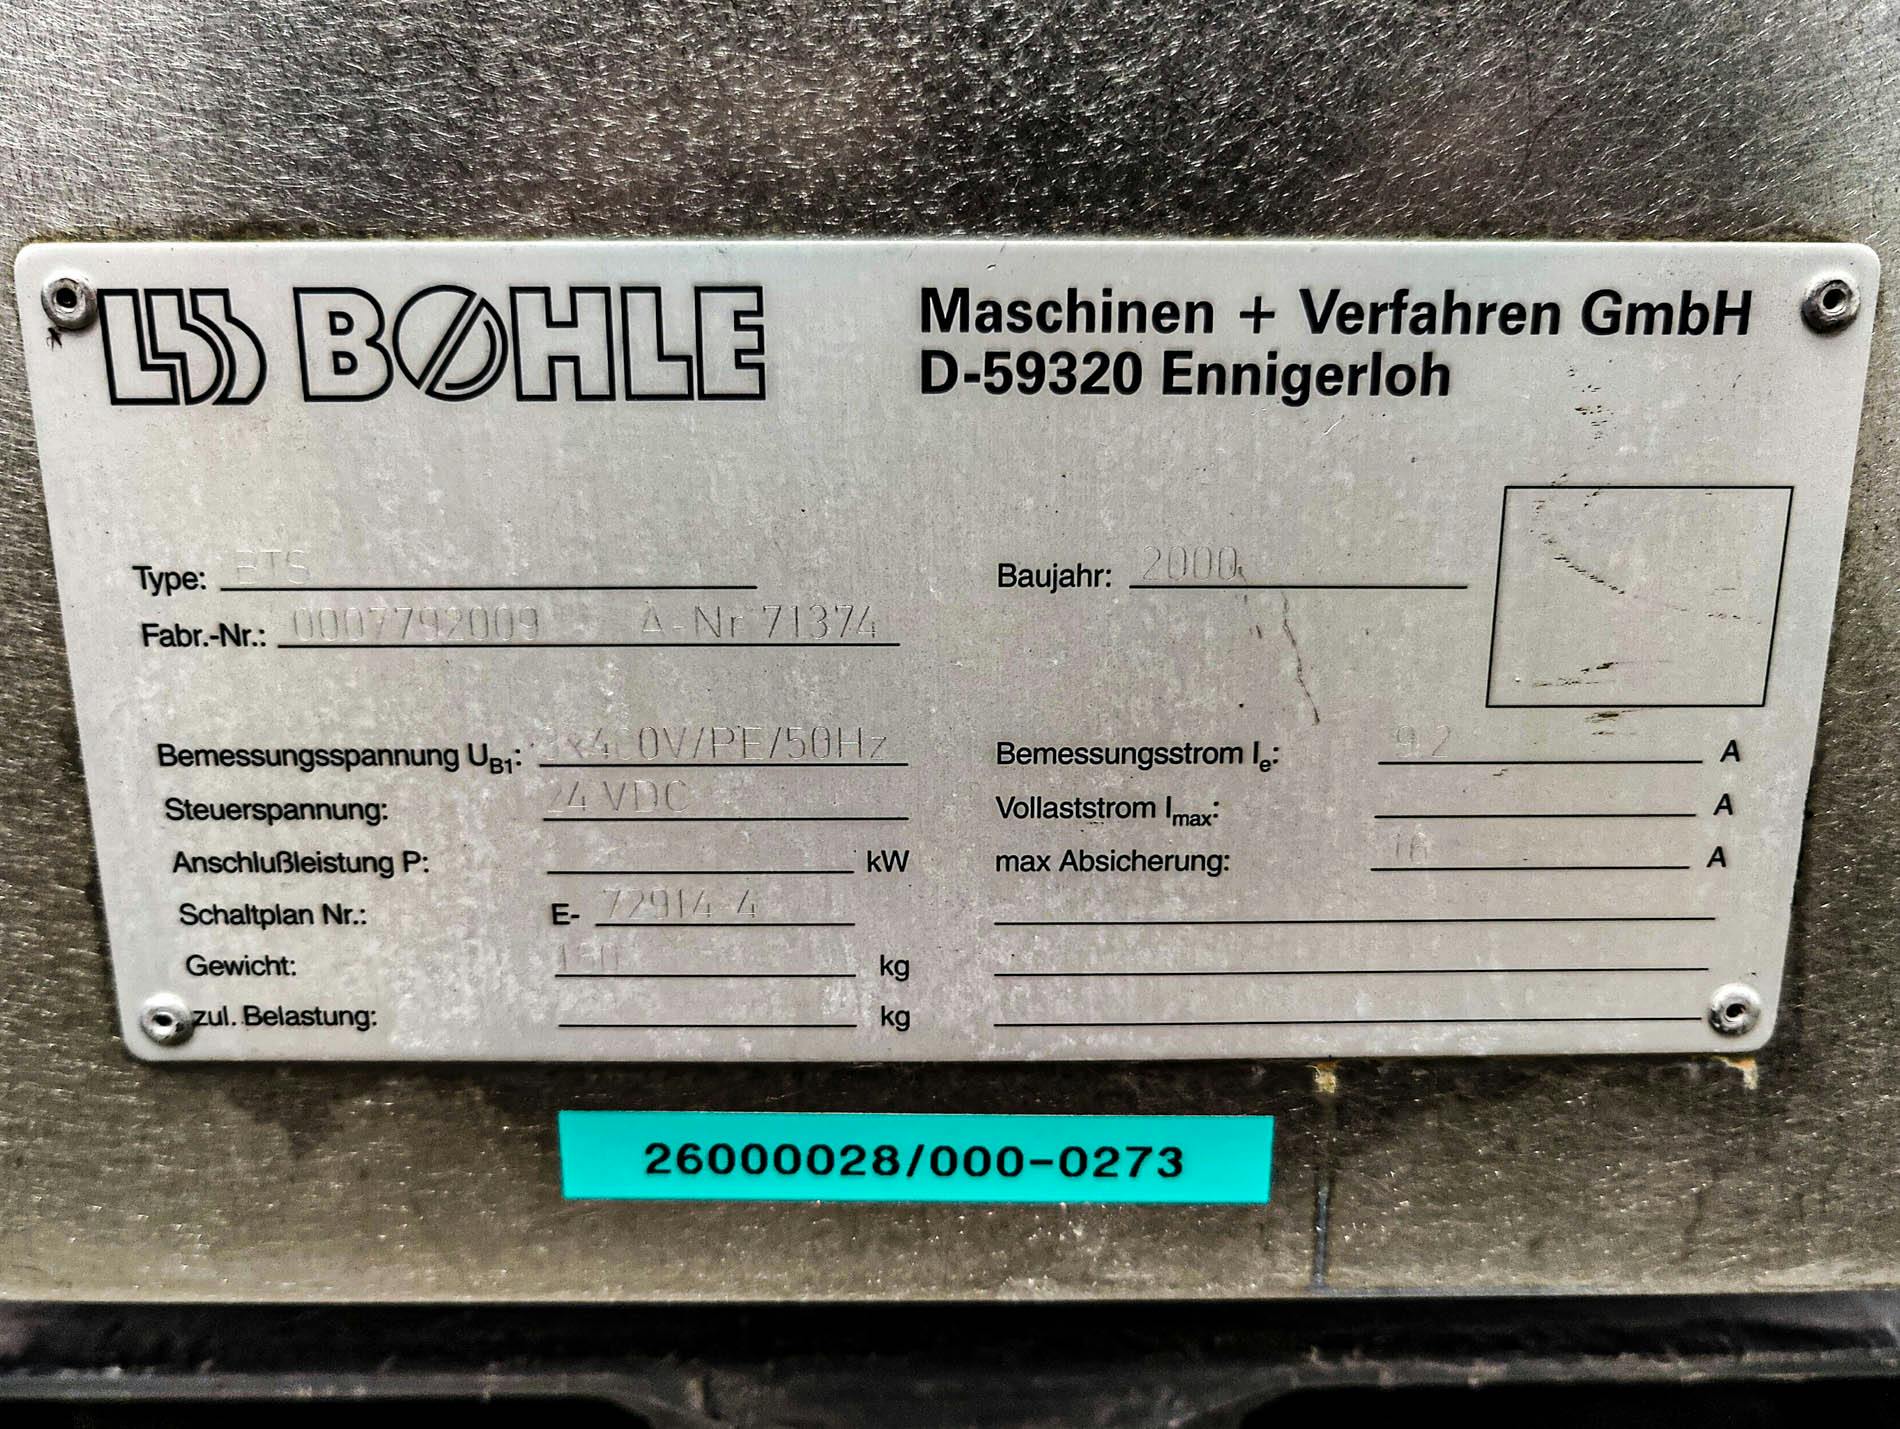 Bohle BTS Bohle Turbo Sieve - Granuliersieb - image 11